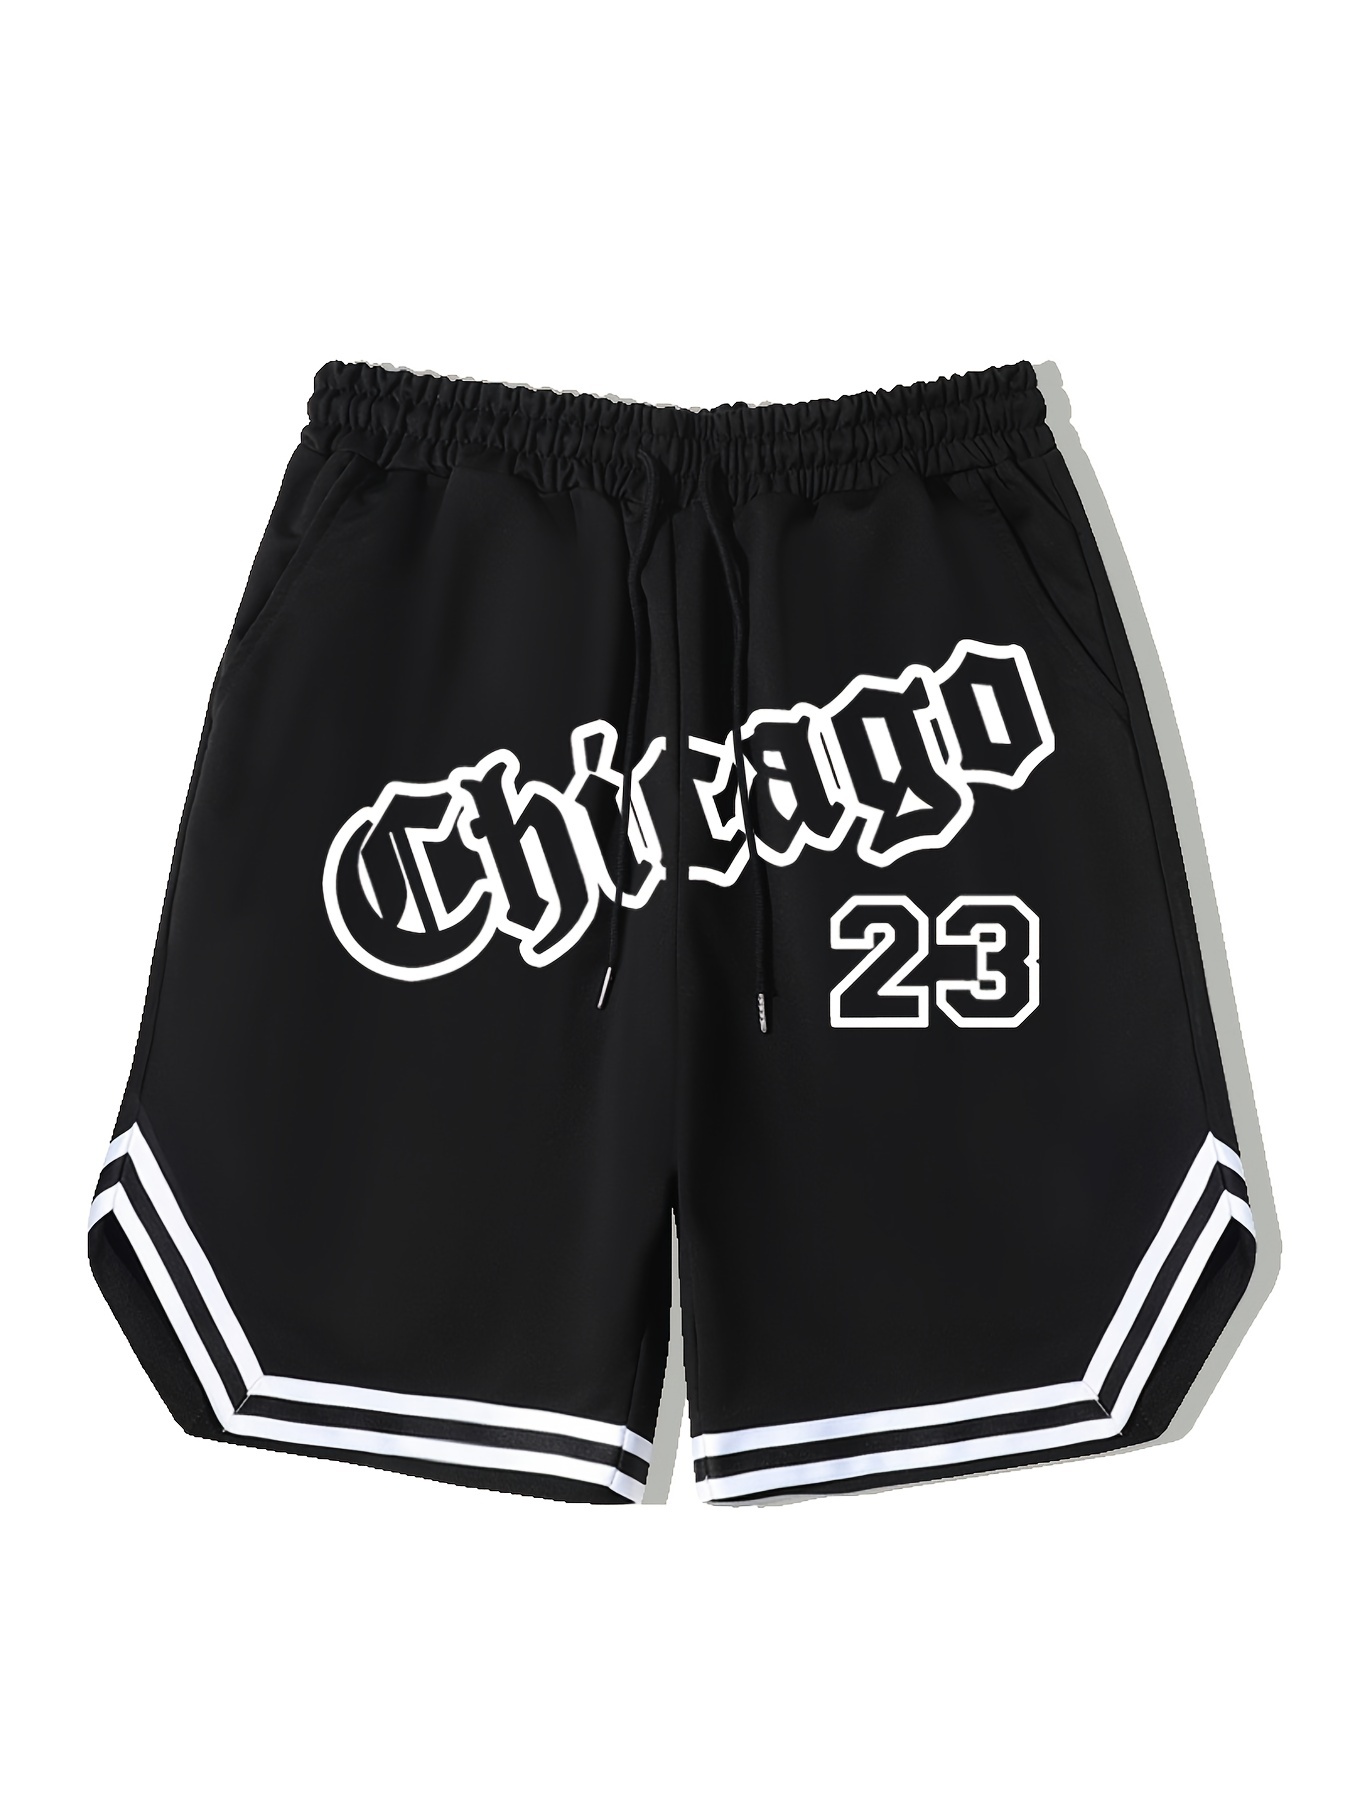 Official Chicago Bulls Shorts, Basketball Shorts, Gym Shorts, Compression  Shorts